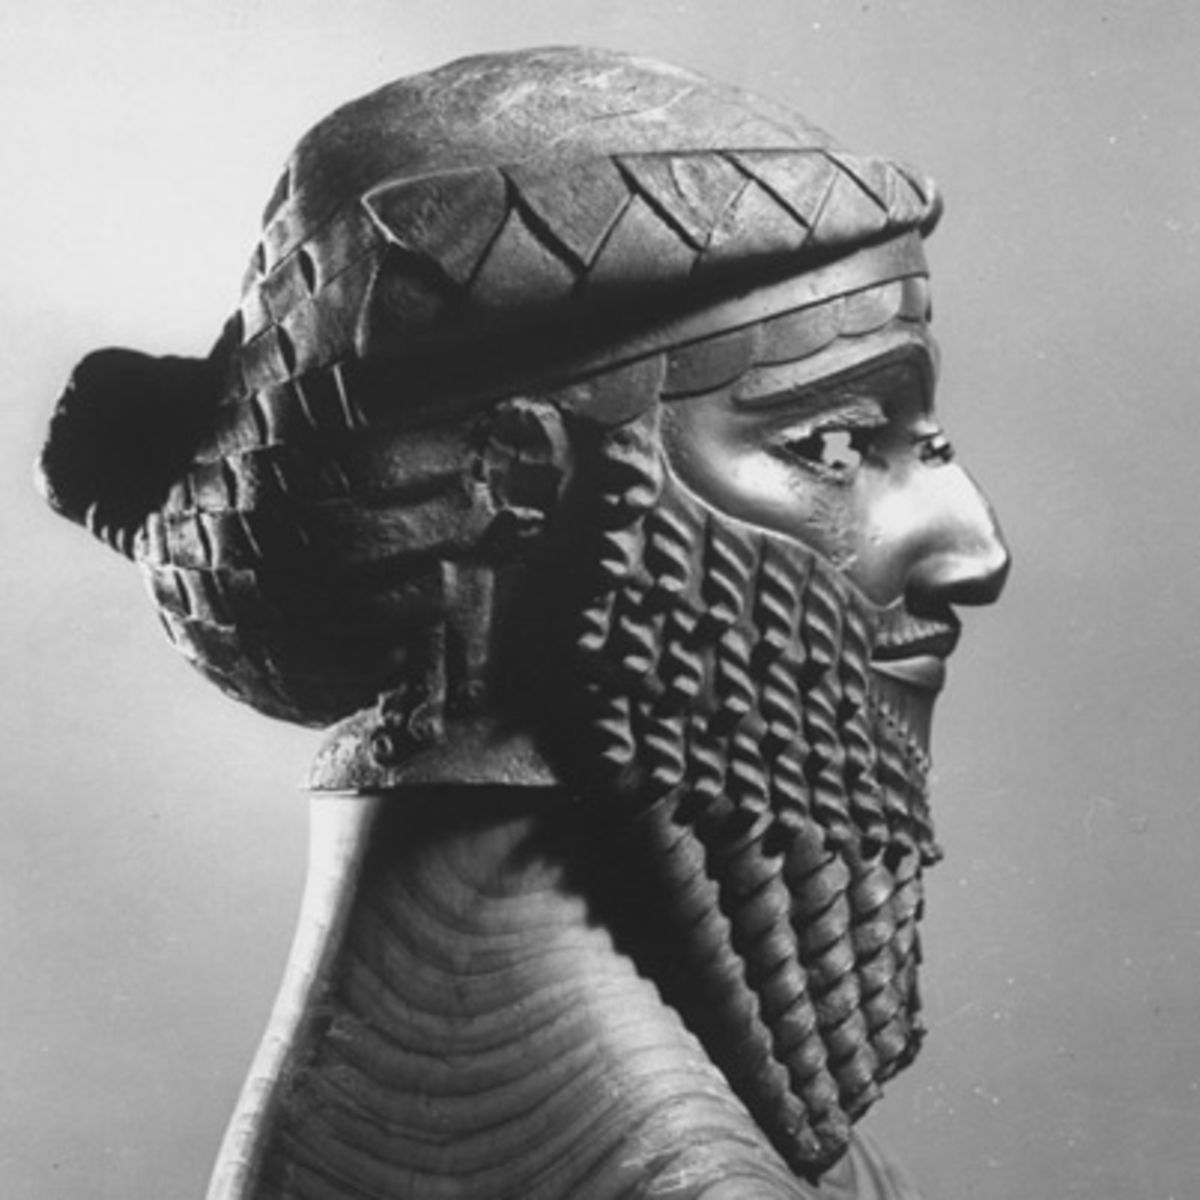 Hoàng đế Sargon của nước Akkad được mệnh danh là “Đức Vua Chân Chính”